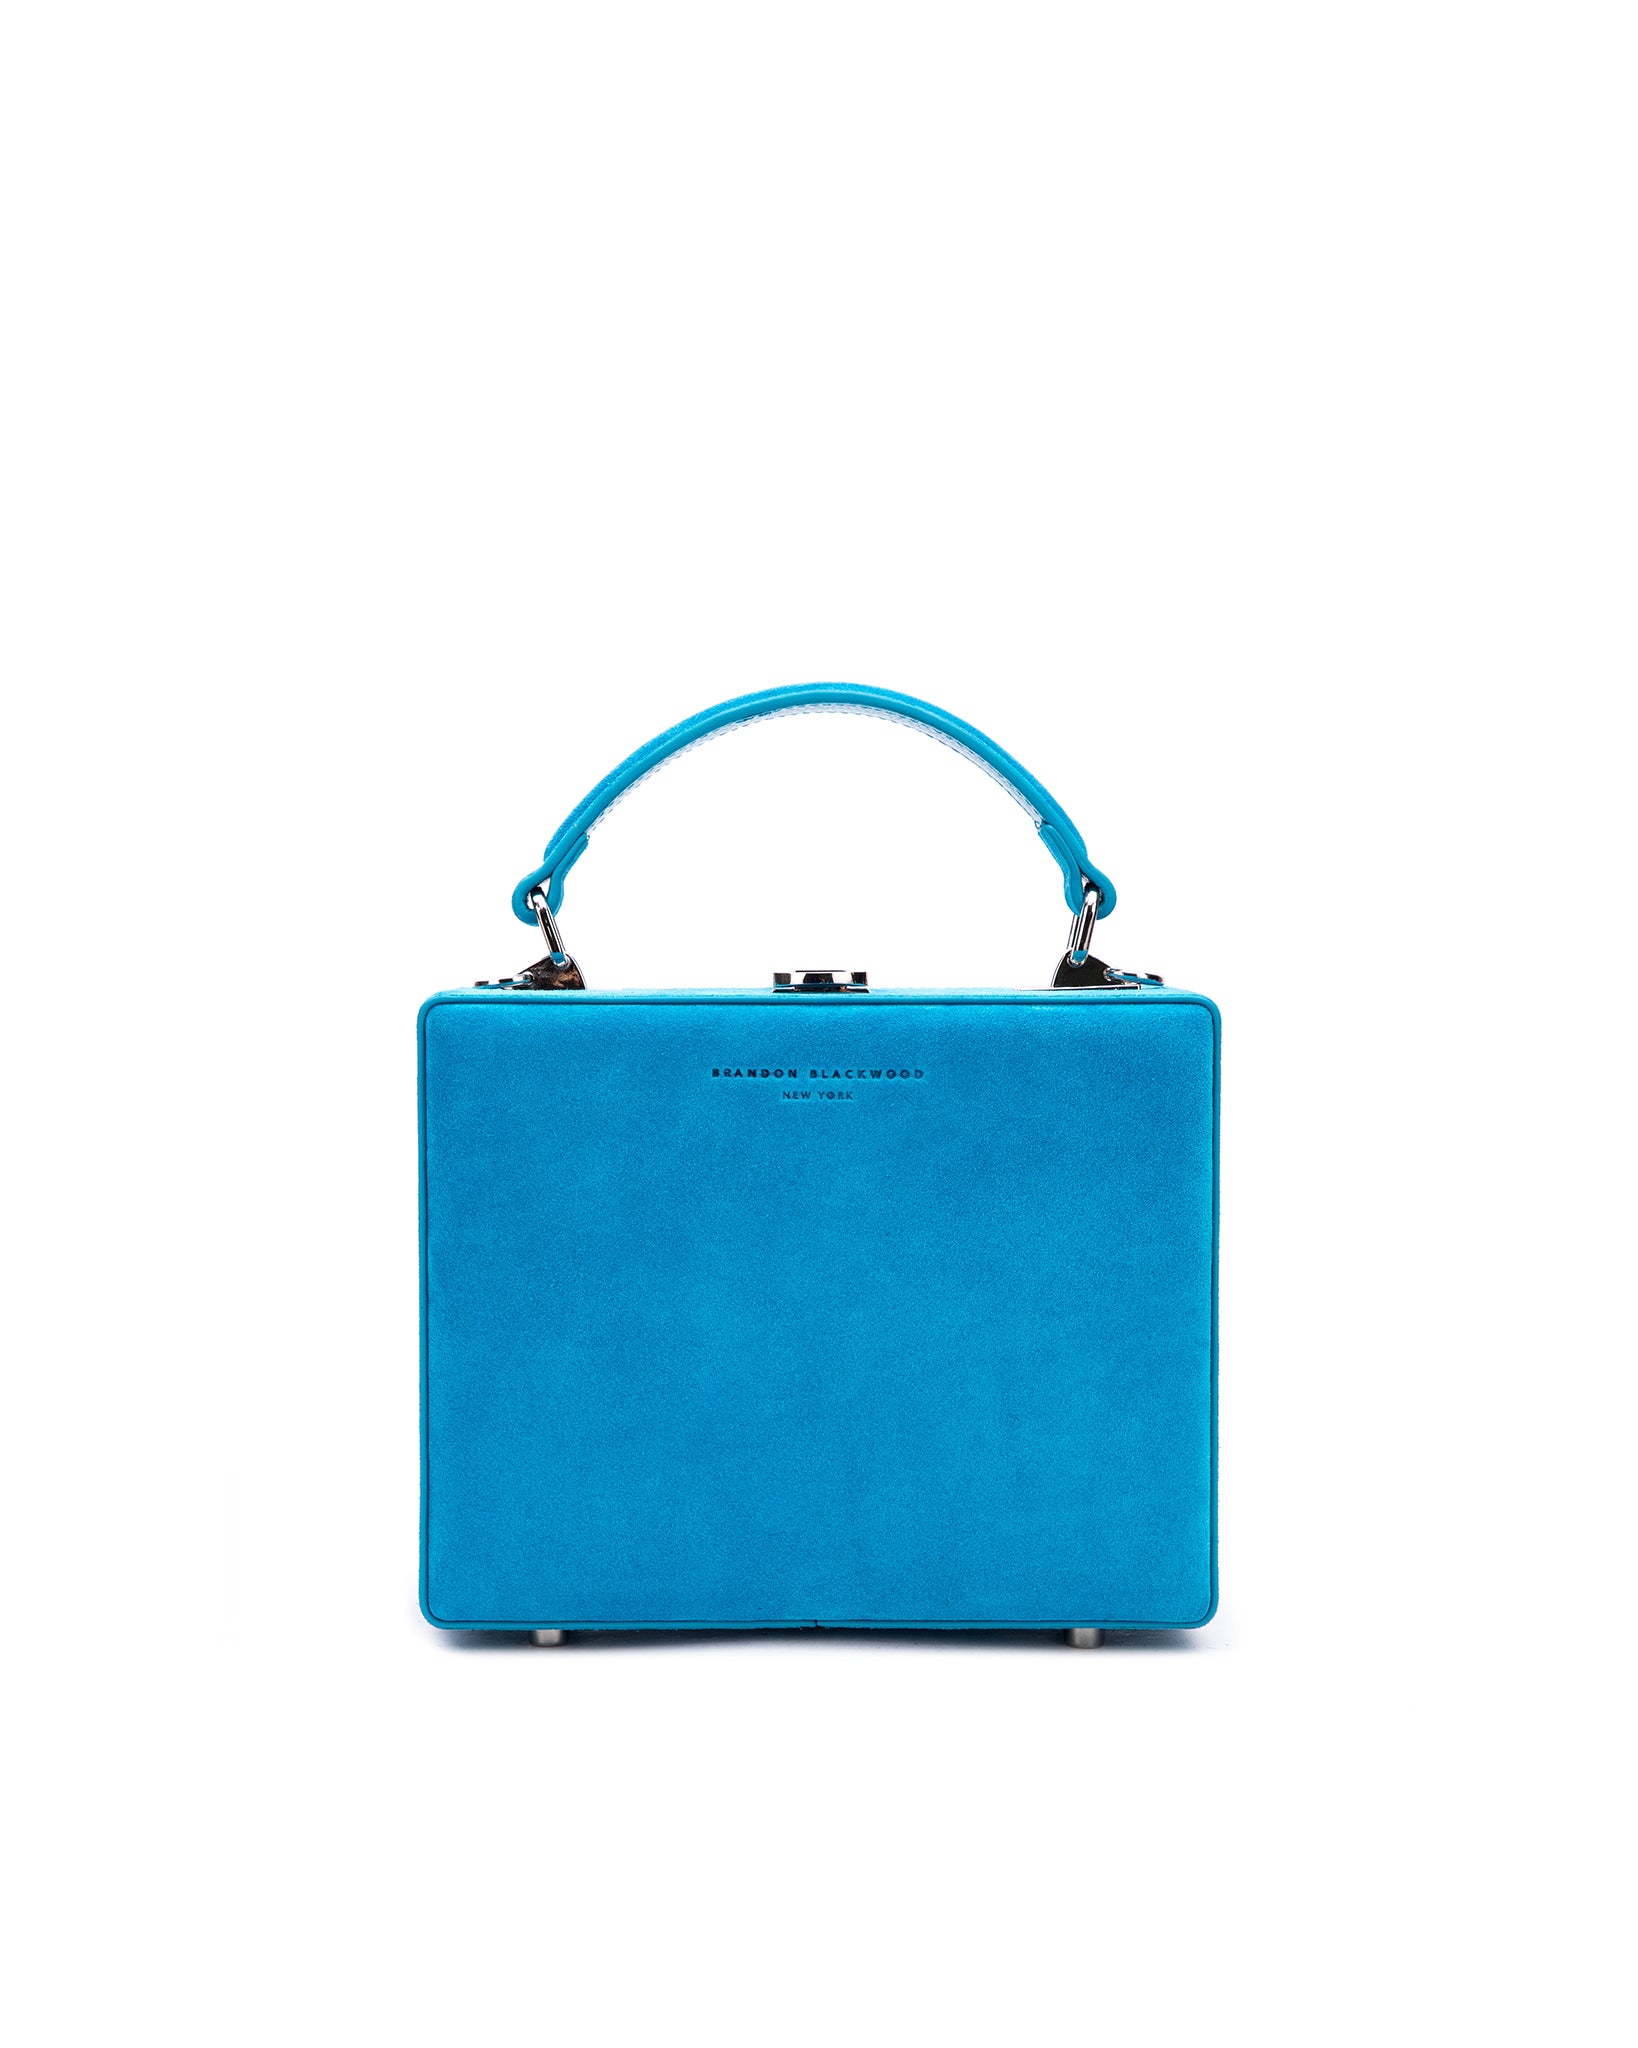 Handbag Brandon Blackwood Blue in Suede - 25734908